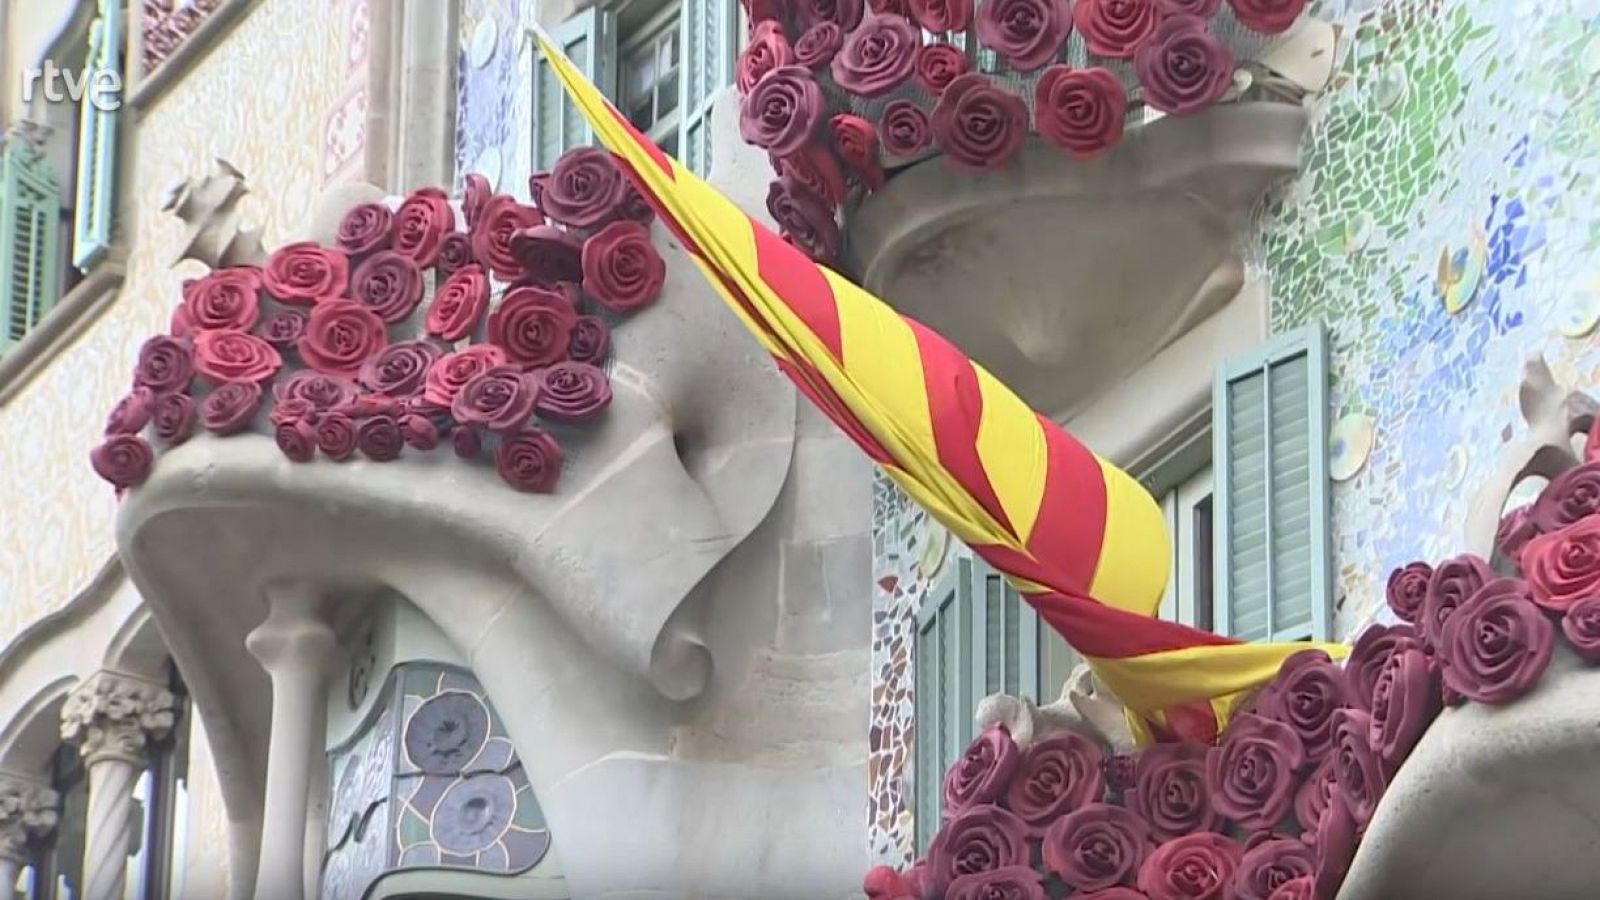 Arxiu TVE Catalunya - Informatius - Roses d'Antoni Gaudí a la casa Batlló per Sant Jordi